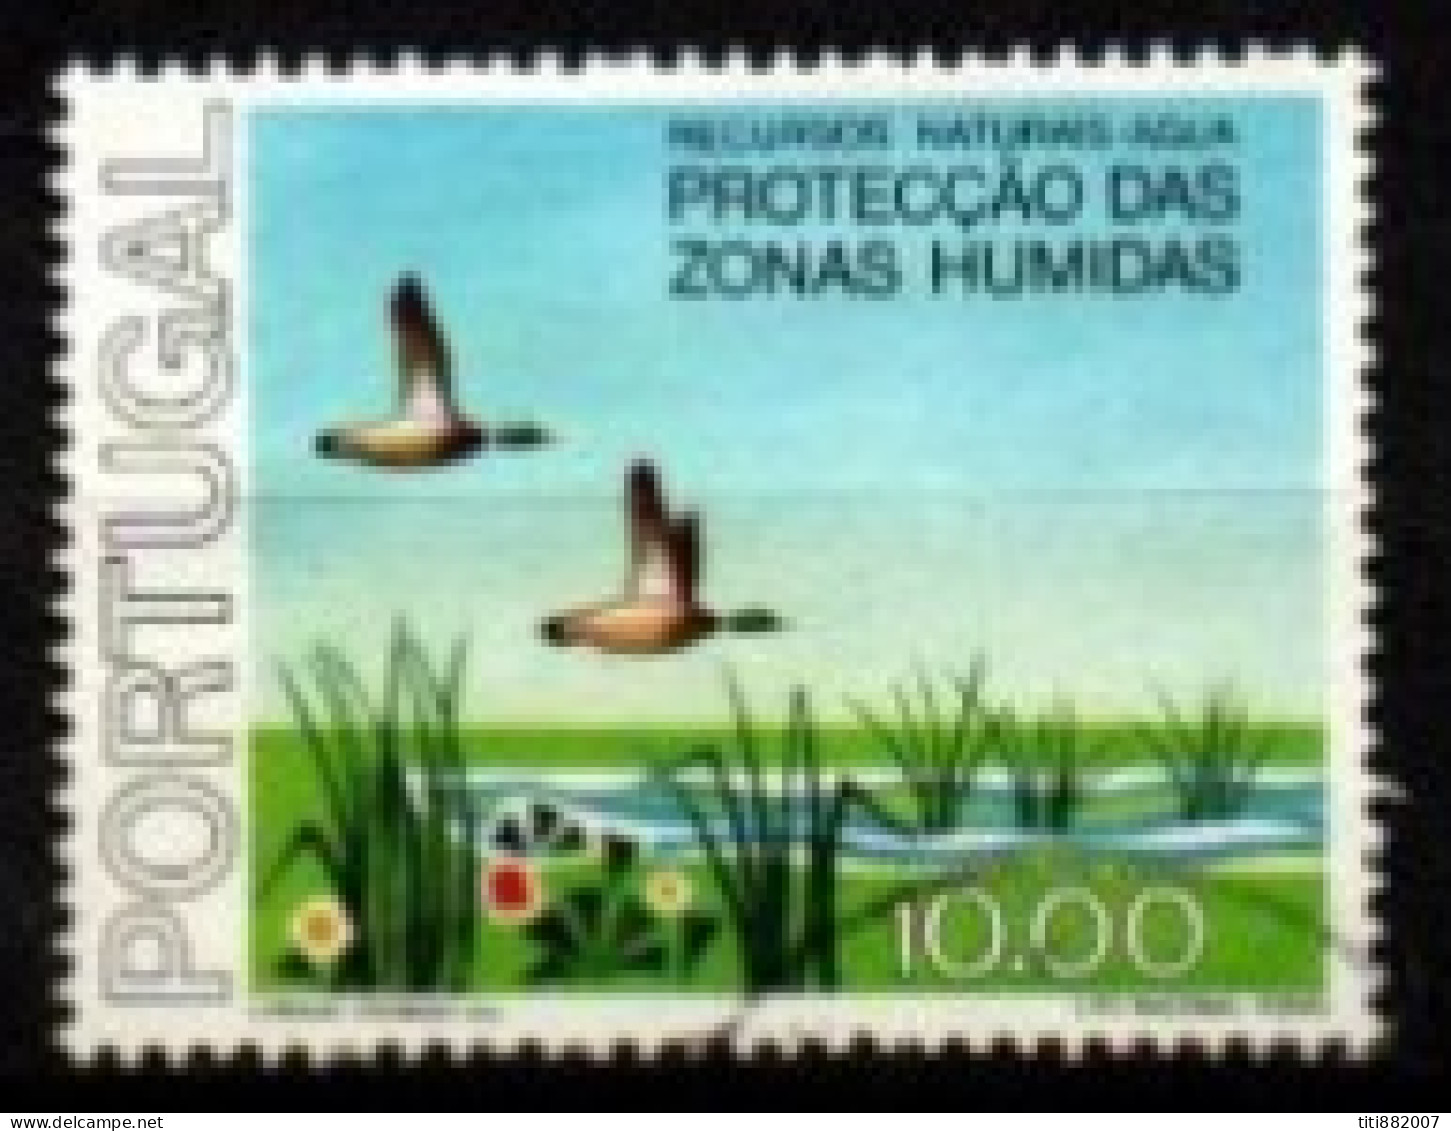 PORTUGAL    -   1976.    Y&T N° 1318 Oblitéré.  Oiseaux D'eau - Used Stamps